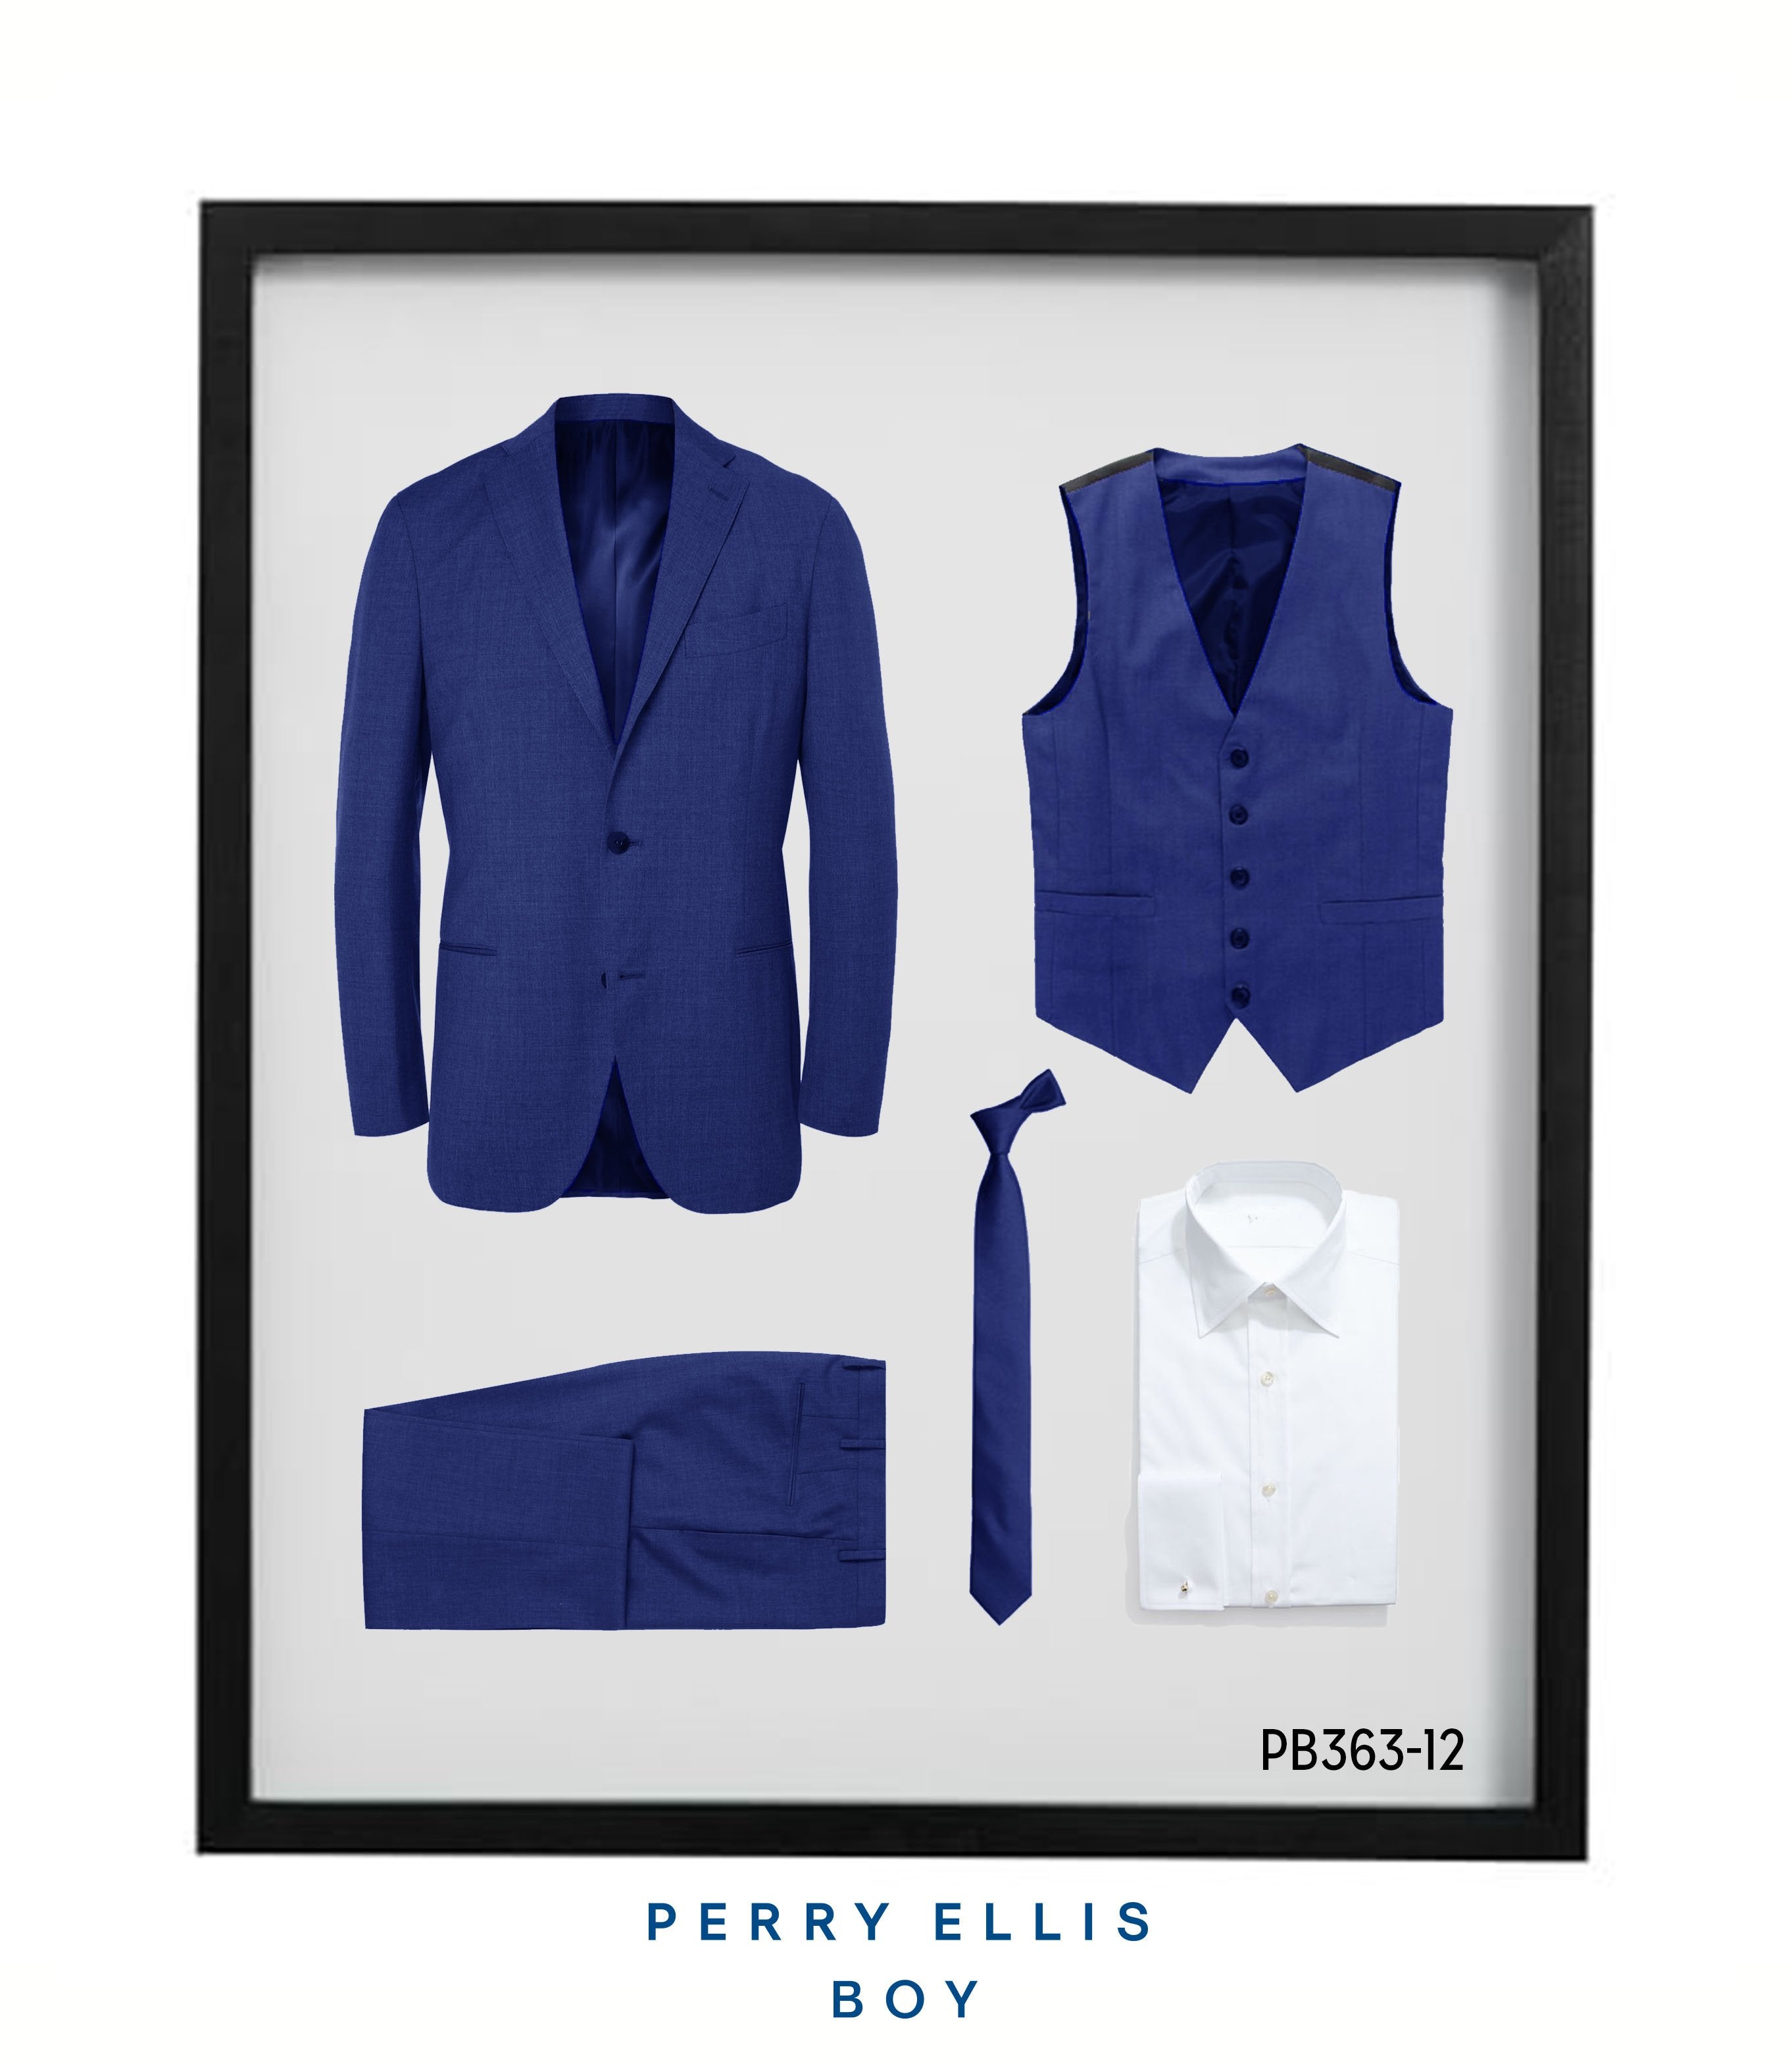 Perry Ellis Boys Suit Royal Blue Suits For Boy's